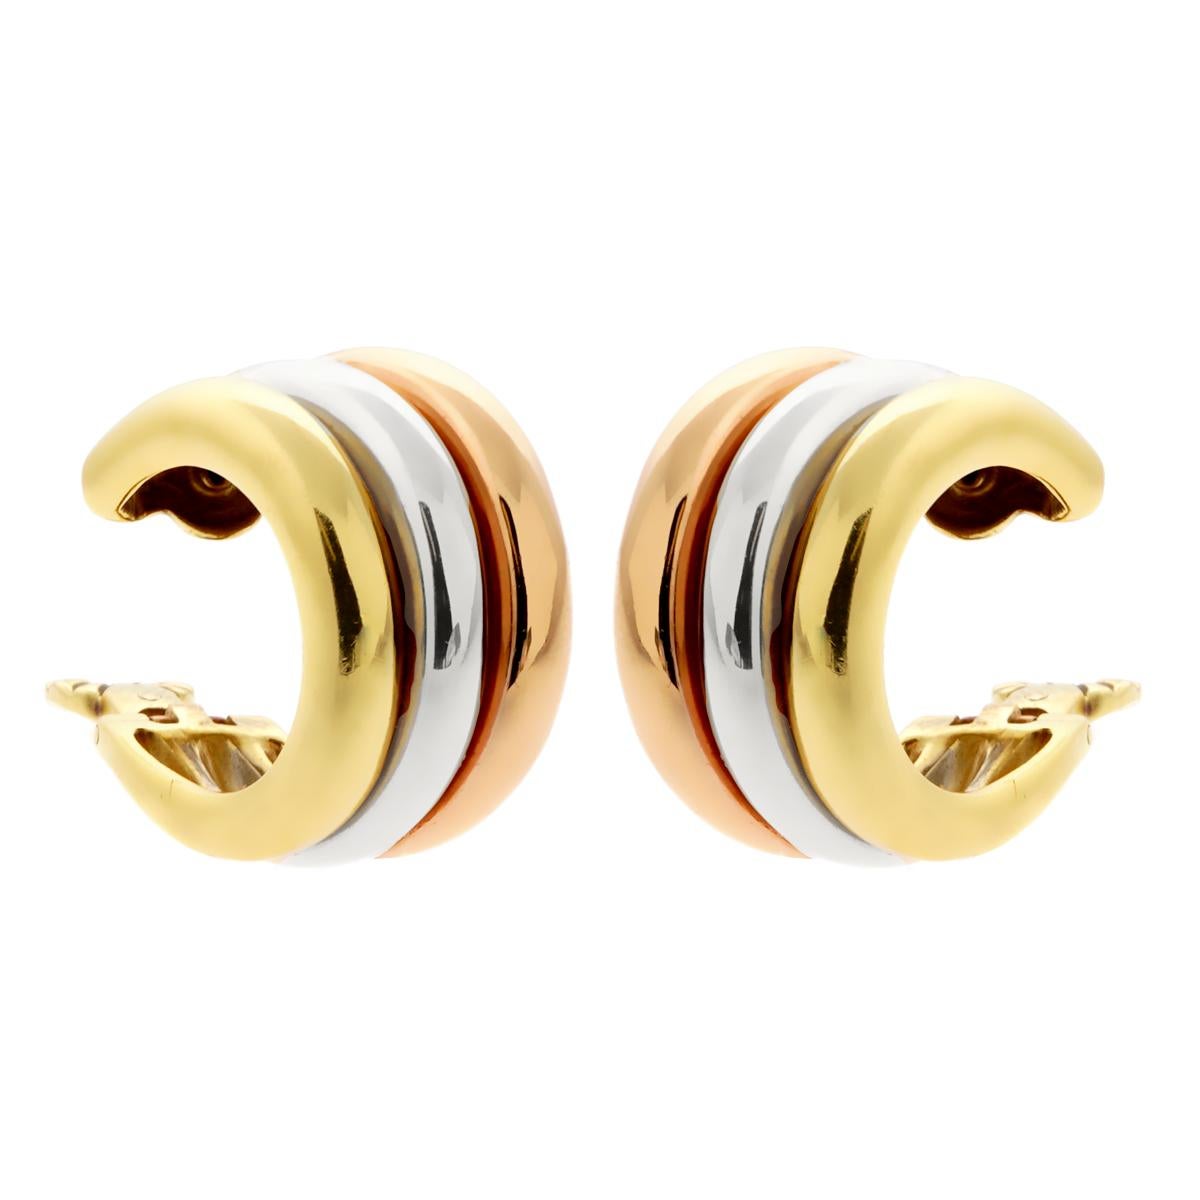 Ein fabelhaftes und elegantes Paar authentischer Cartier-Ohrringe aus 18 Karat Weiß-, Gelb- und Roségold in einem zeitlosen und modernen Design. Sie schmiegen sich sanft um den Ohransatz und ergänzen jeden Stil.